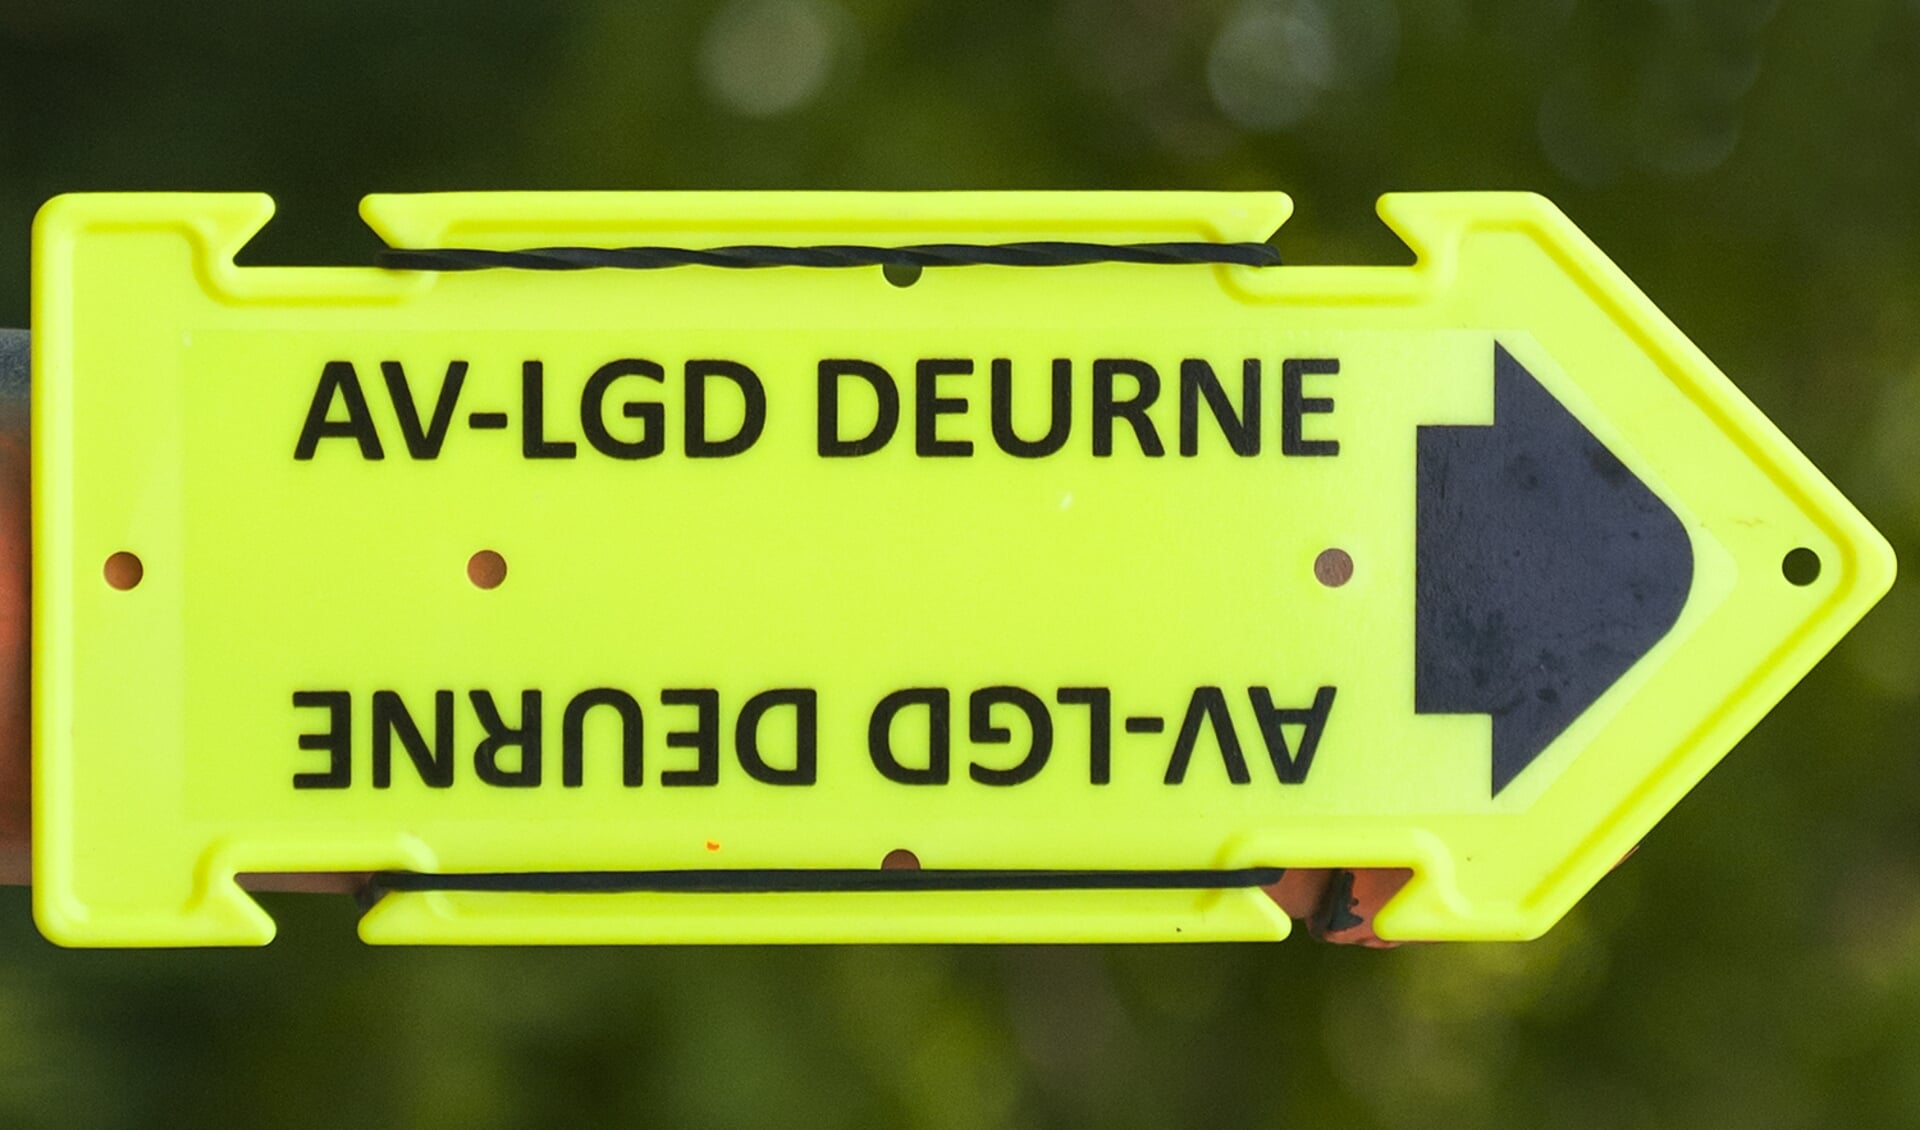 De route werd aangegeven door gele bordjes/pijlen met het opschrift “AV-LGD Deurne”.